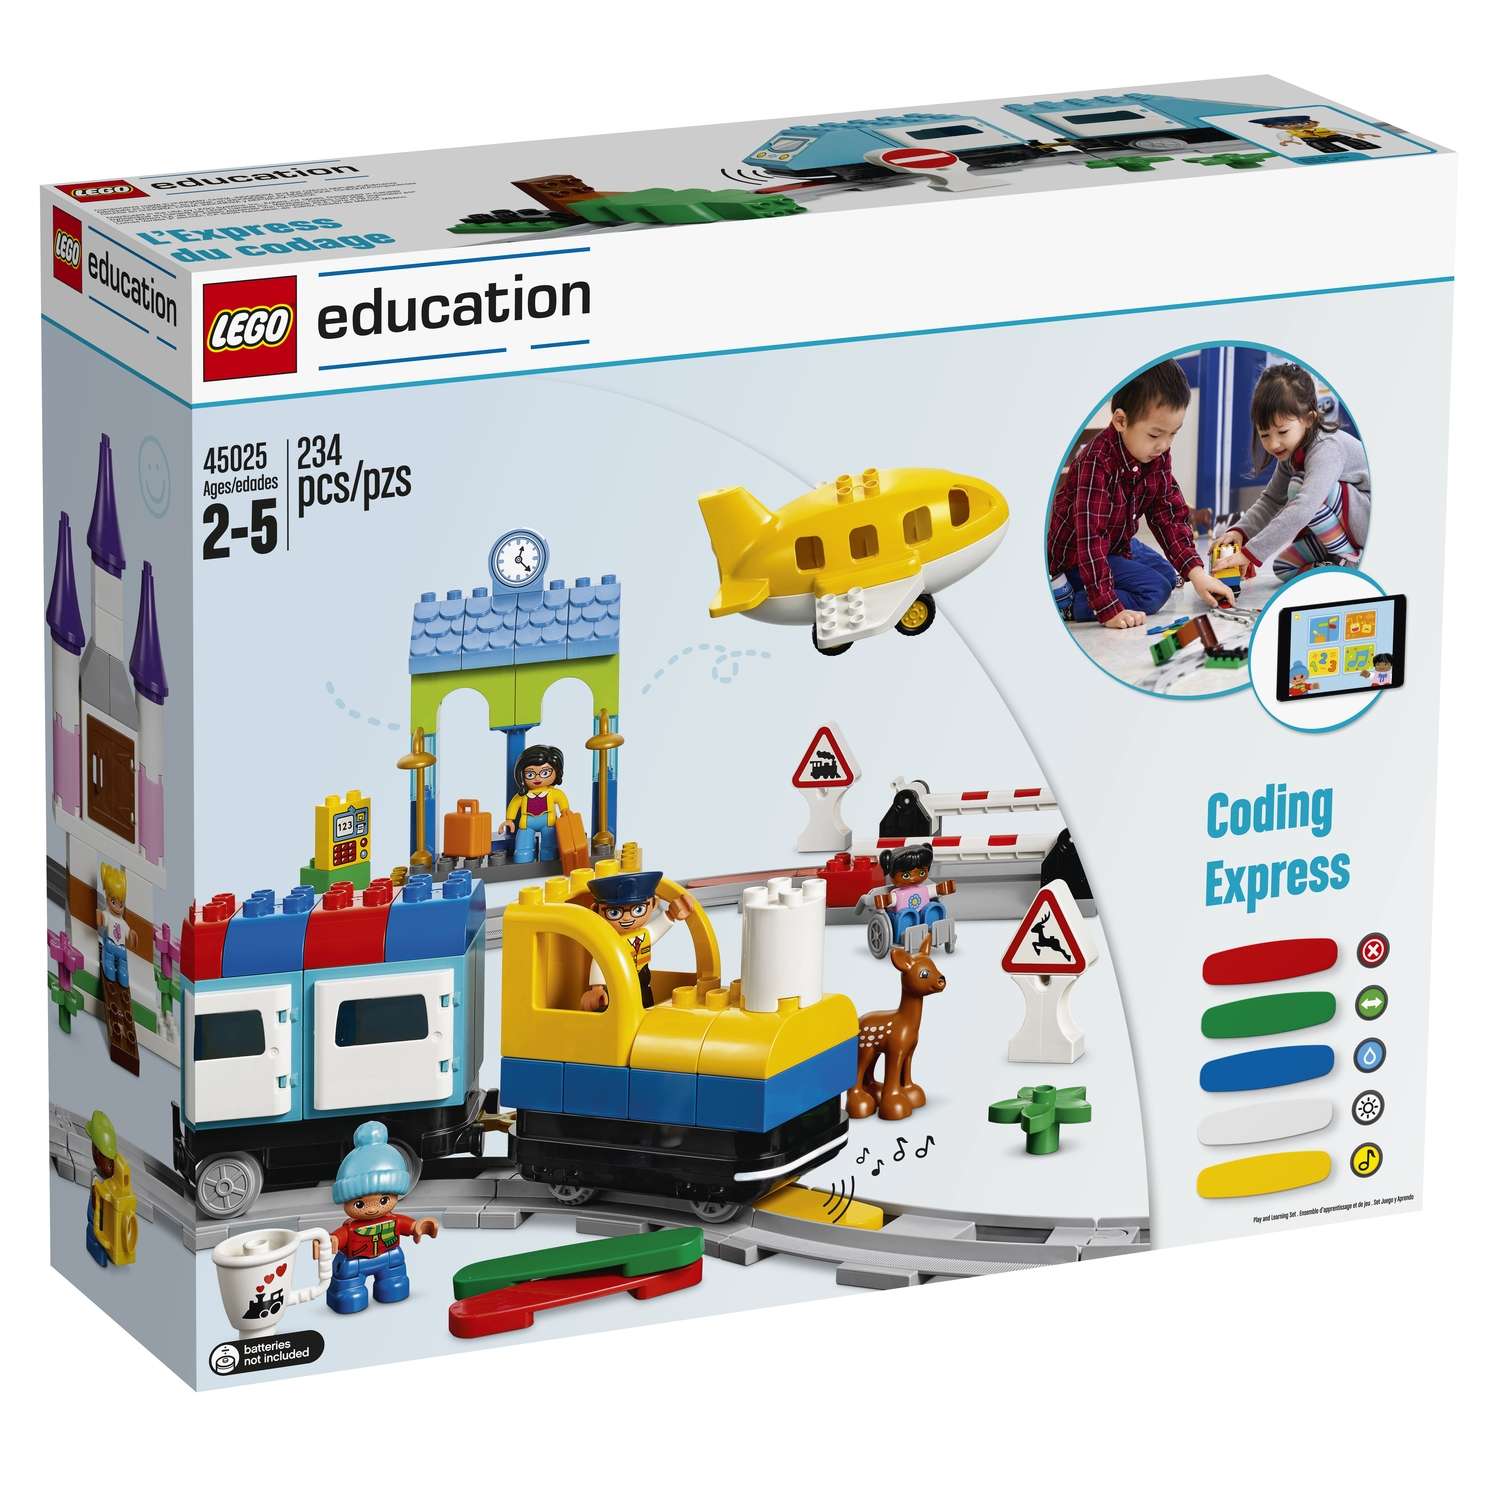 Конструктор LEGO Education Экспресс юный программист 45025 - фото 1